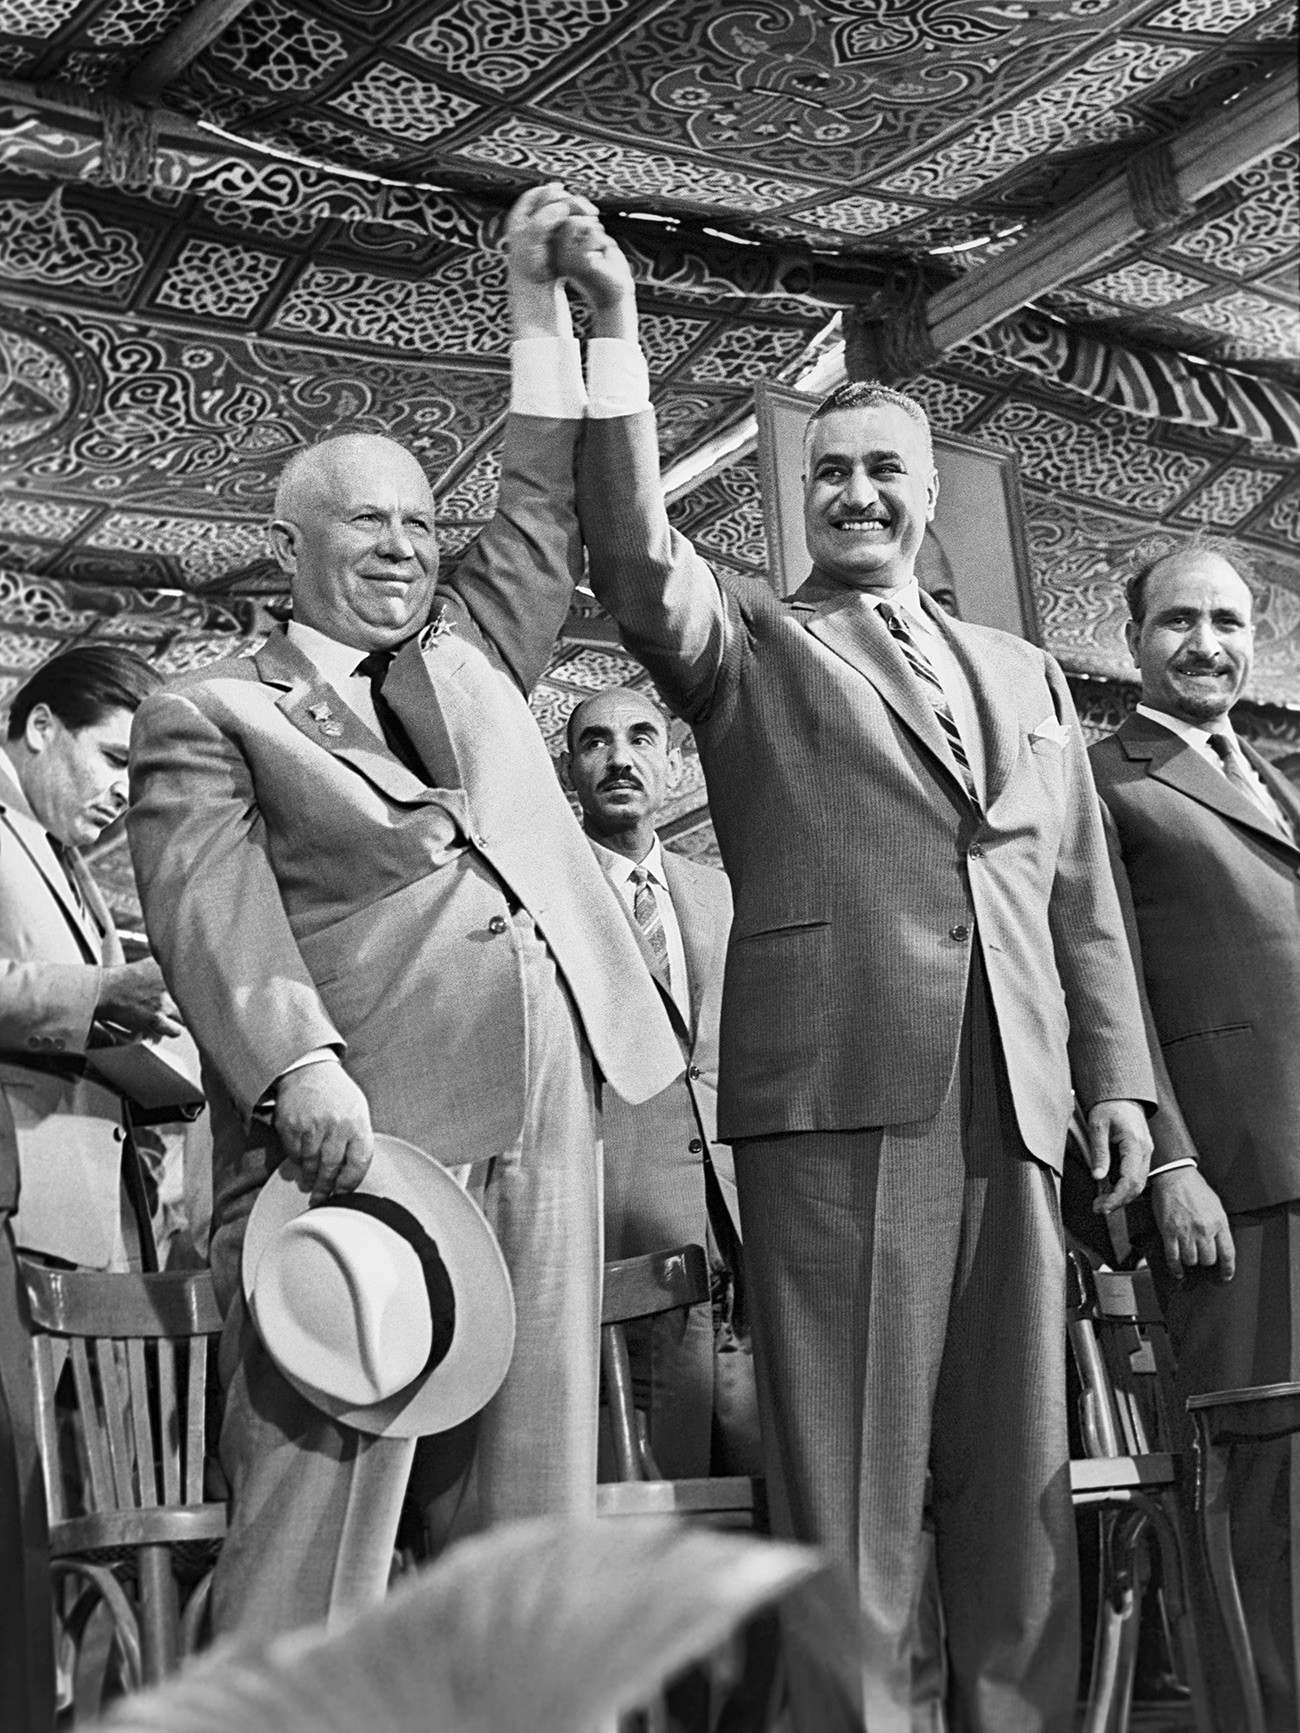 O egípcio Gamal Abdel Nasser foi o primeiro líder africano a estabelecer relações amigáveis com a URSS.

